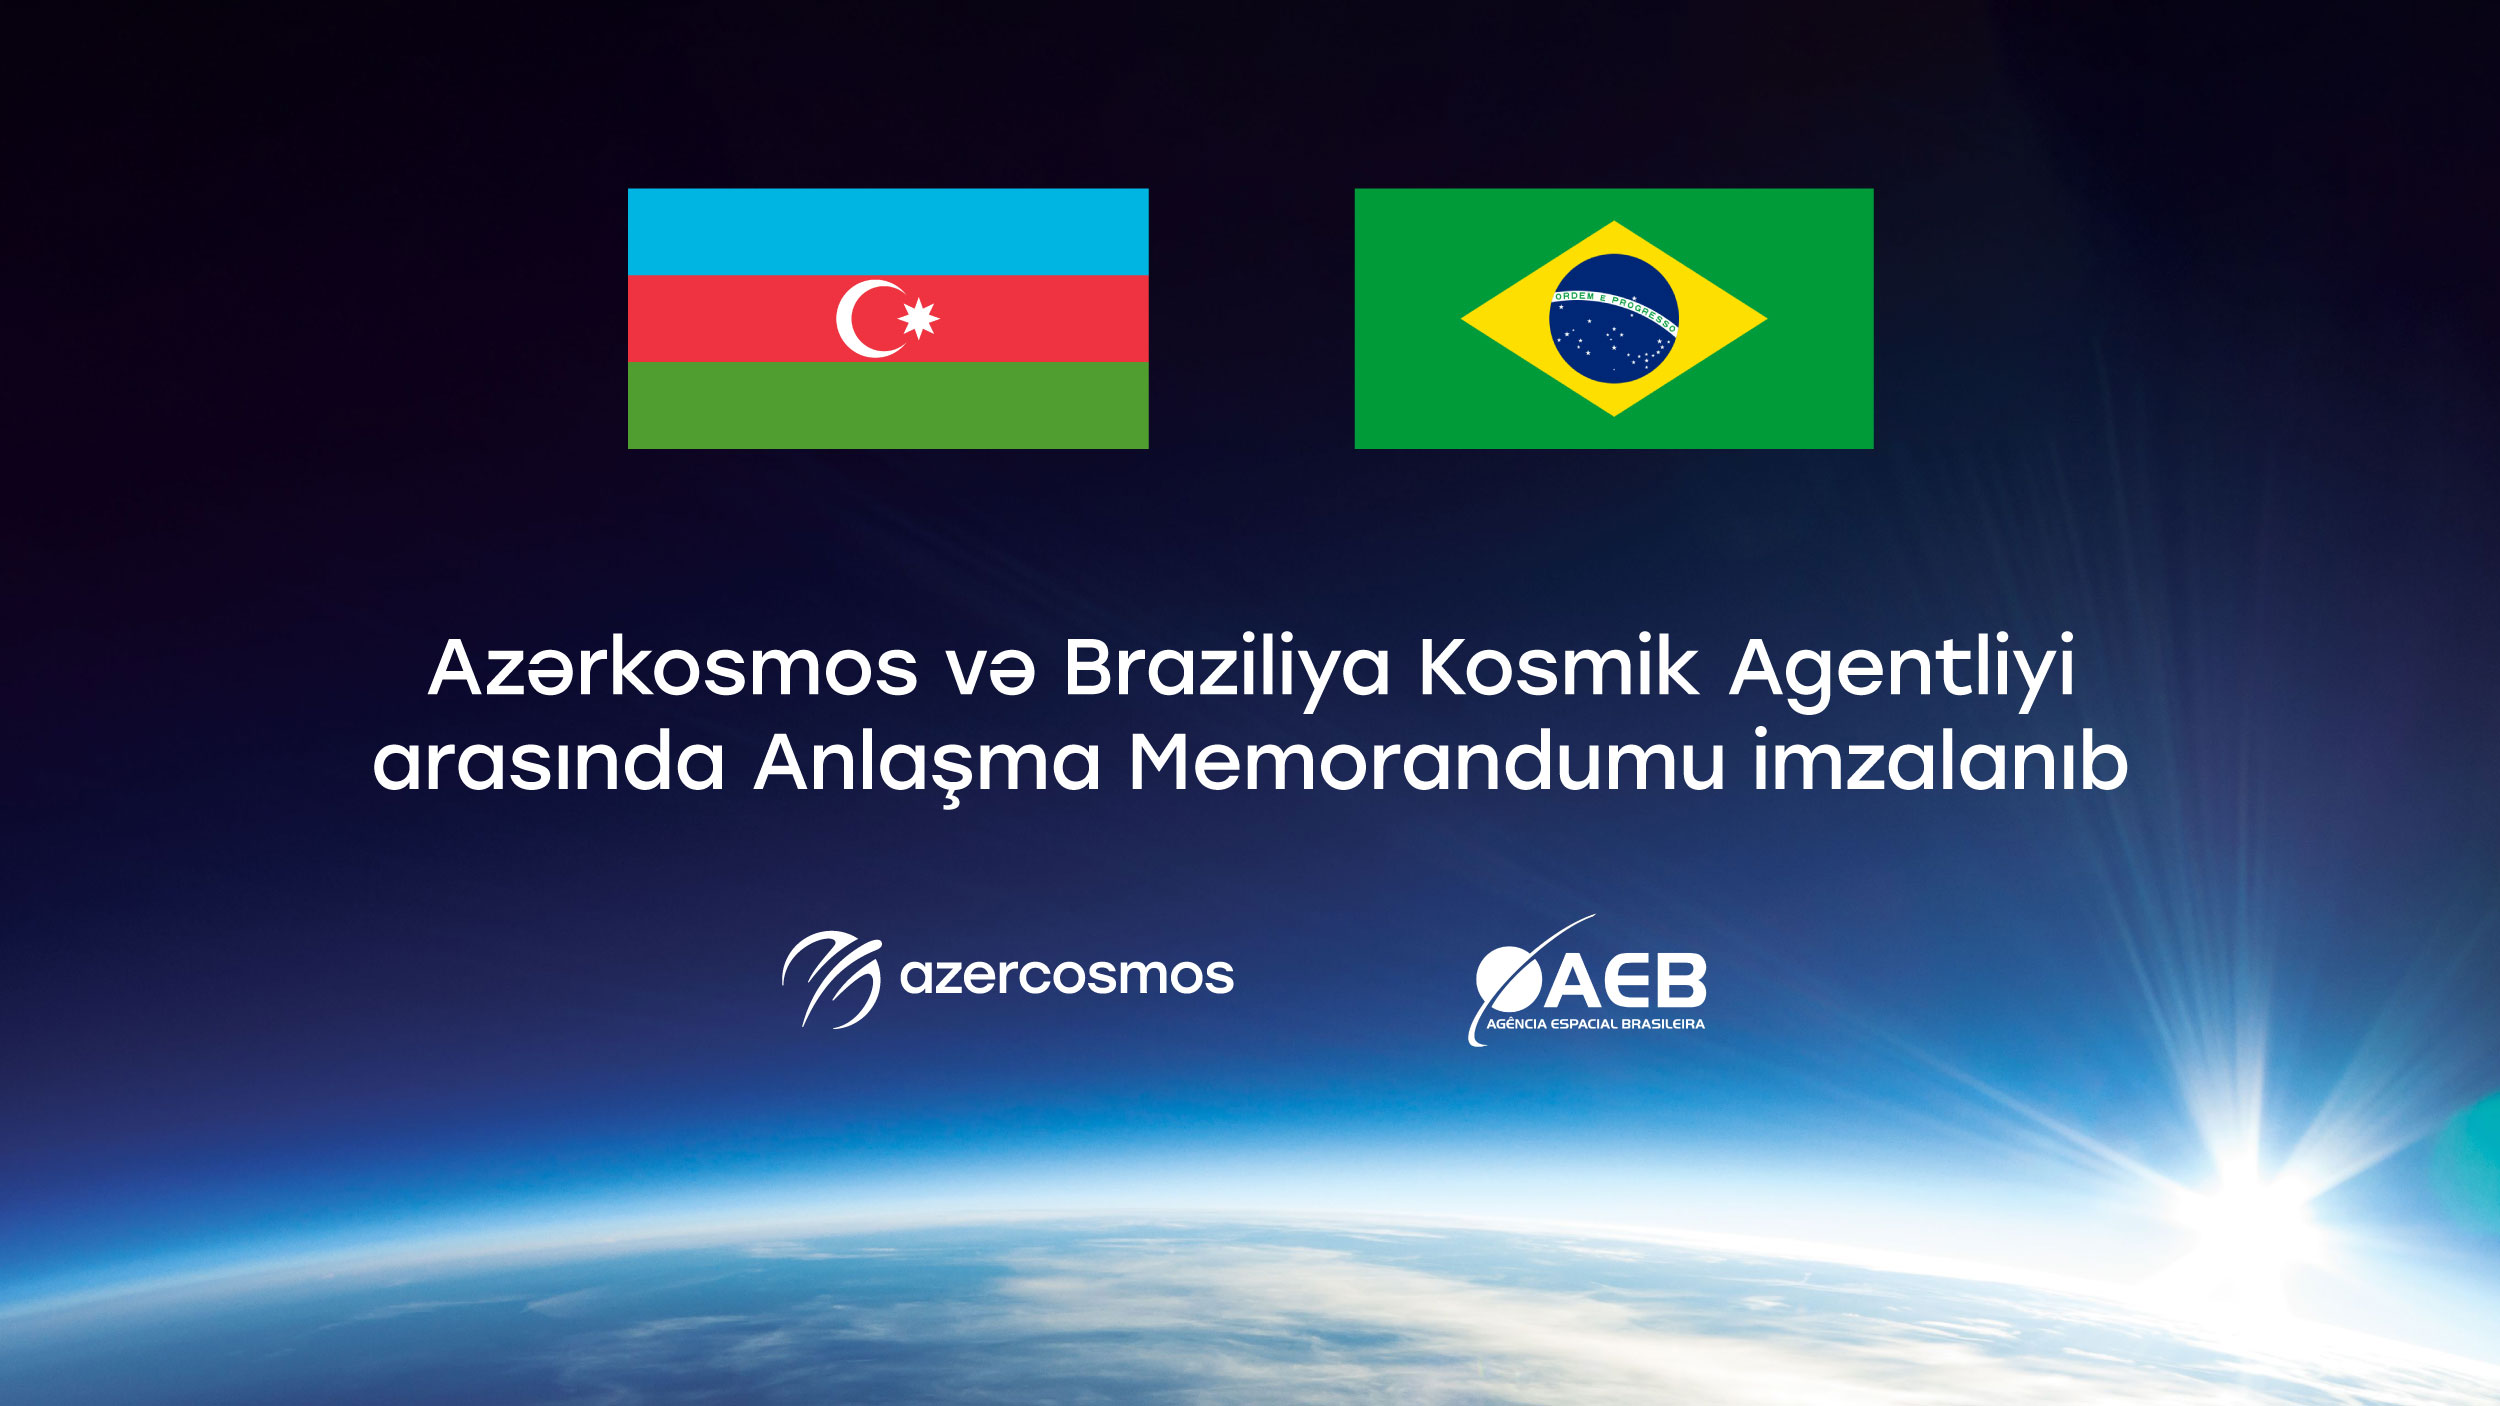 Azərkosmos və Braziliya Kosmik Agentliyi arasında kosmik təşəbbüslərə dair memorandum imzalanıb